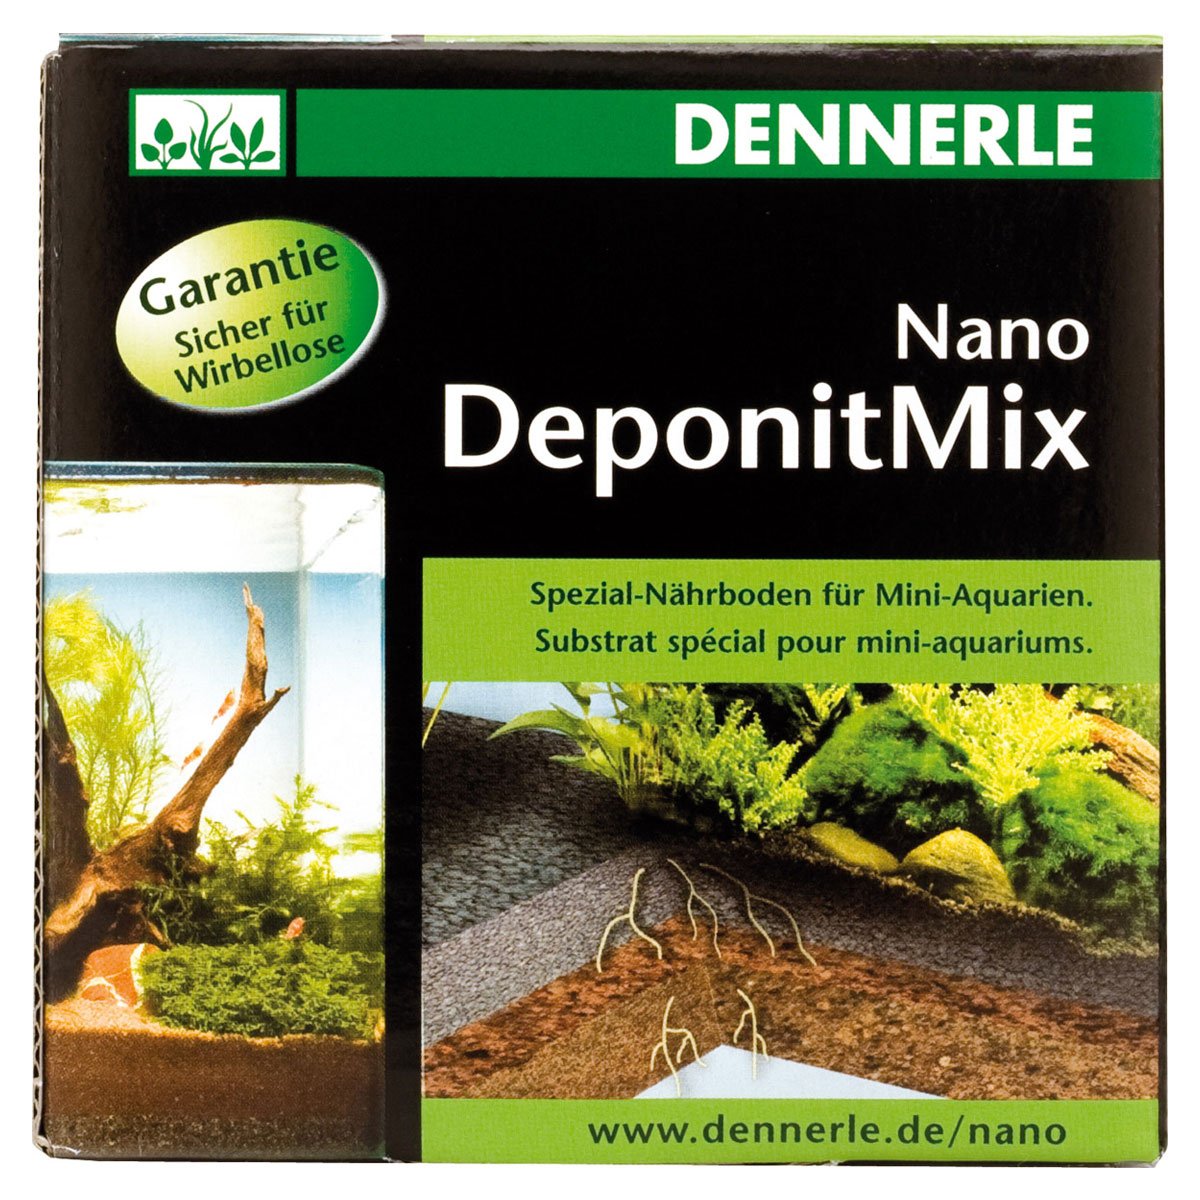 Dennerle Nano DeponitMix Nährboden 1kg von Dennerle